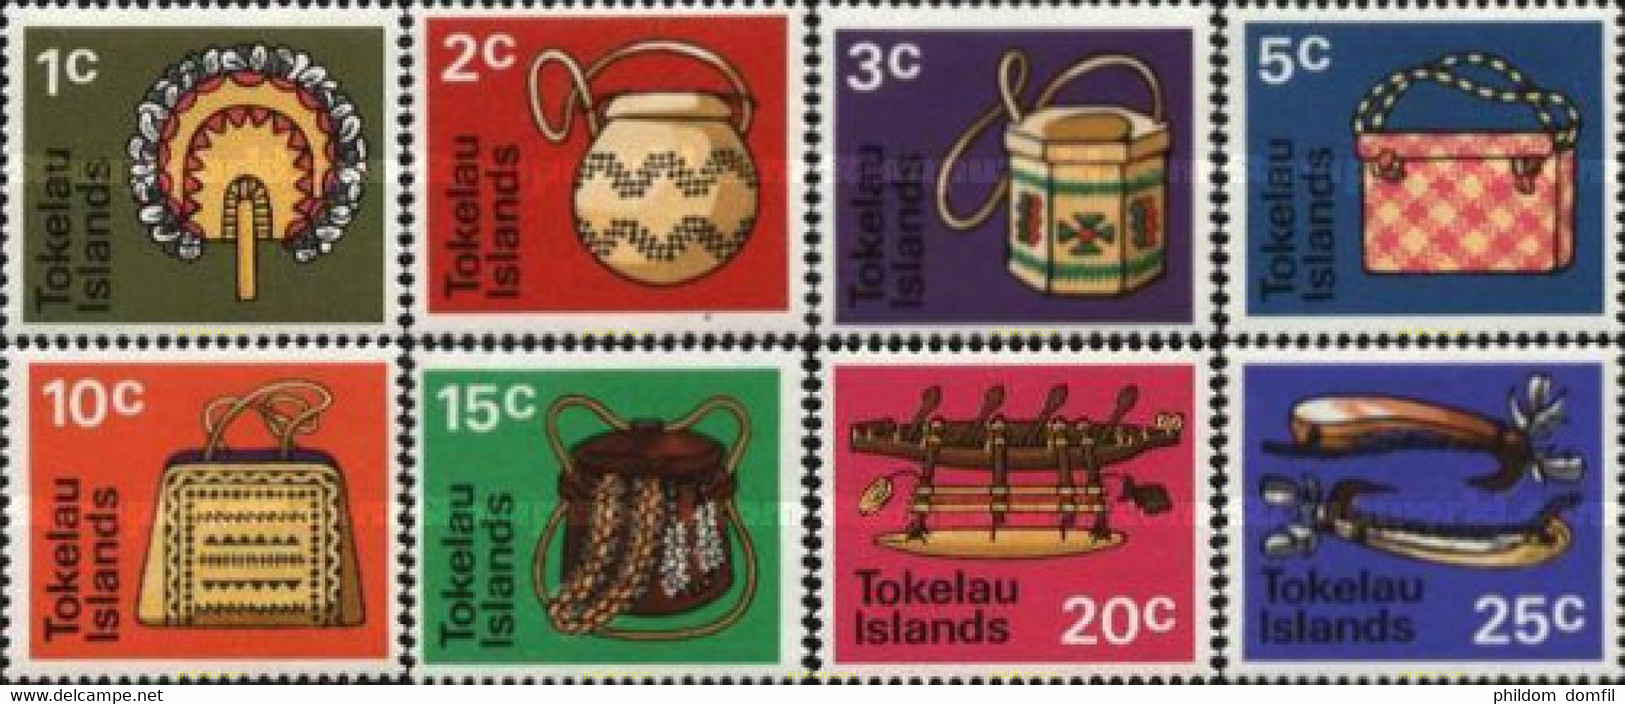 365755 MNH TOKELAU 1971 ARTESANIA - Tokelau